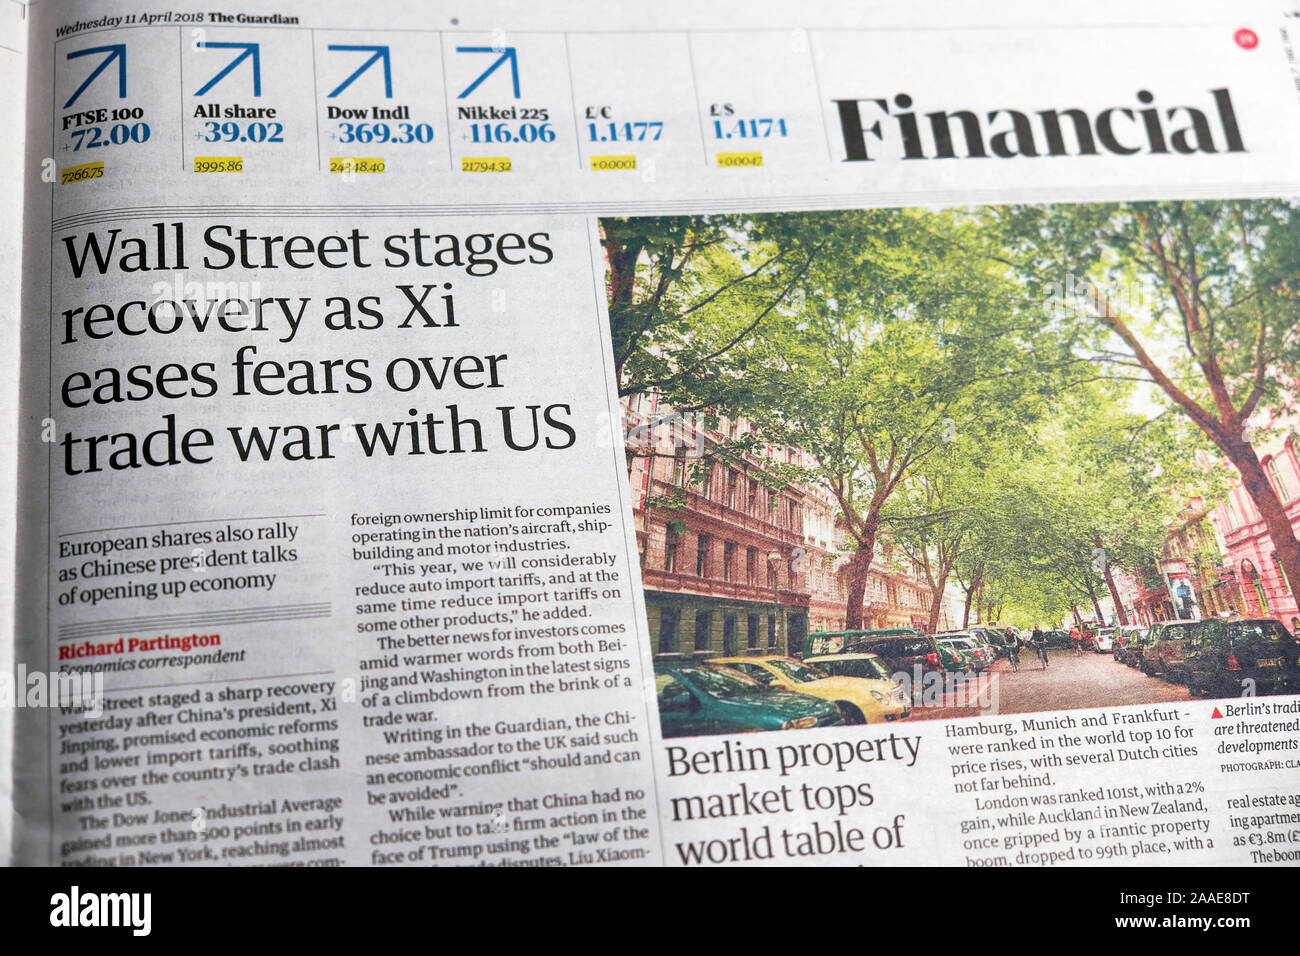 "Etapas de recuperación de Wall Street como Xi alivia los temores sobre la guerra comercial con nosotros' artículo en el periódico Guardian en la sección financiera el 11 de abril de 2018, Londres, Gran Bretaña. Foto de stock